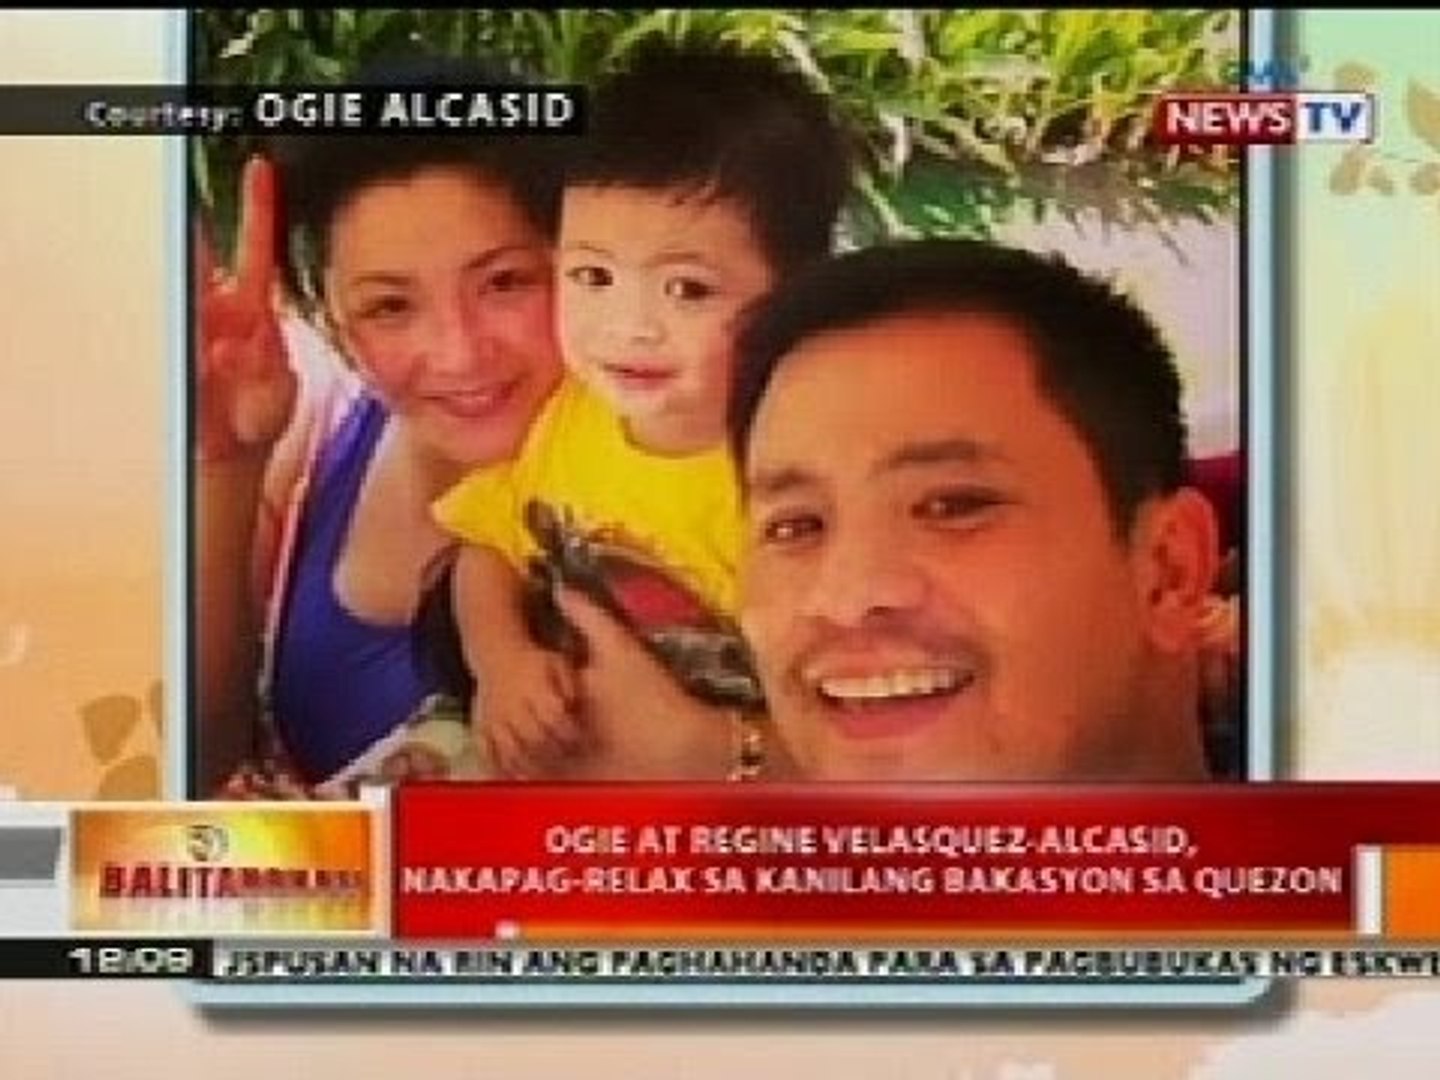 ⁣BT: Ogie at Regine Alcasid, nakapg-relax sa kanilang bakasyon sa Quezon